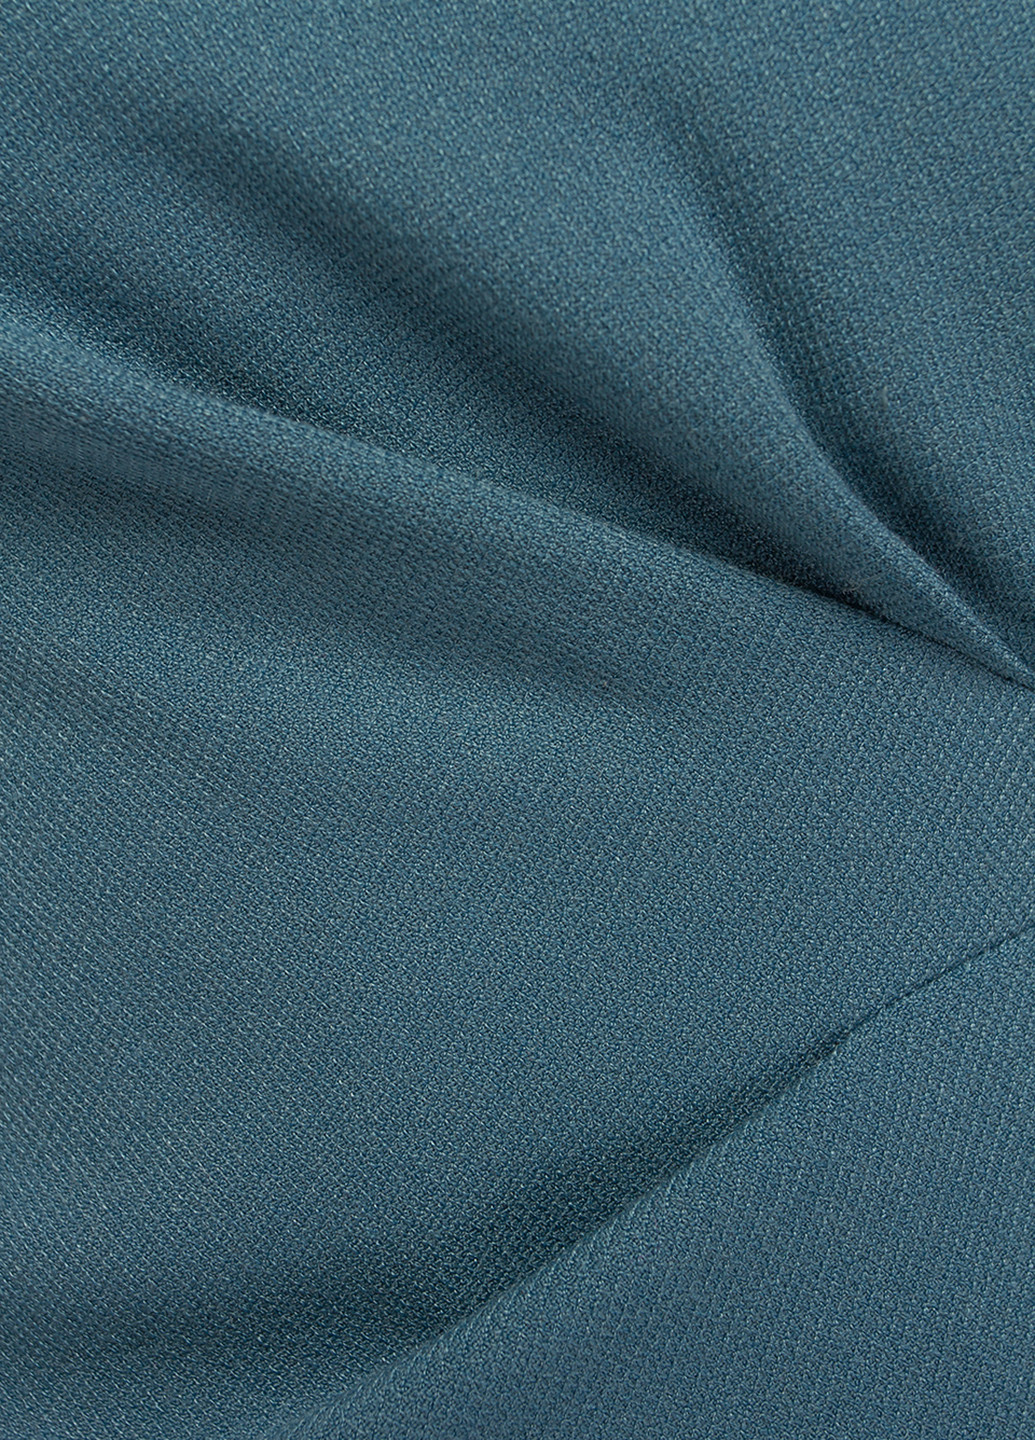 Костюм (жакет, юбка) BGL Комплект (жакет и юбка) юбочный однотонный голубой деловой вискоза